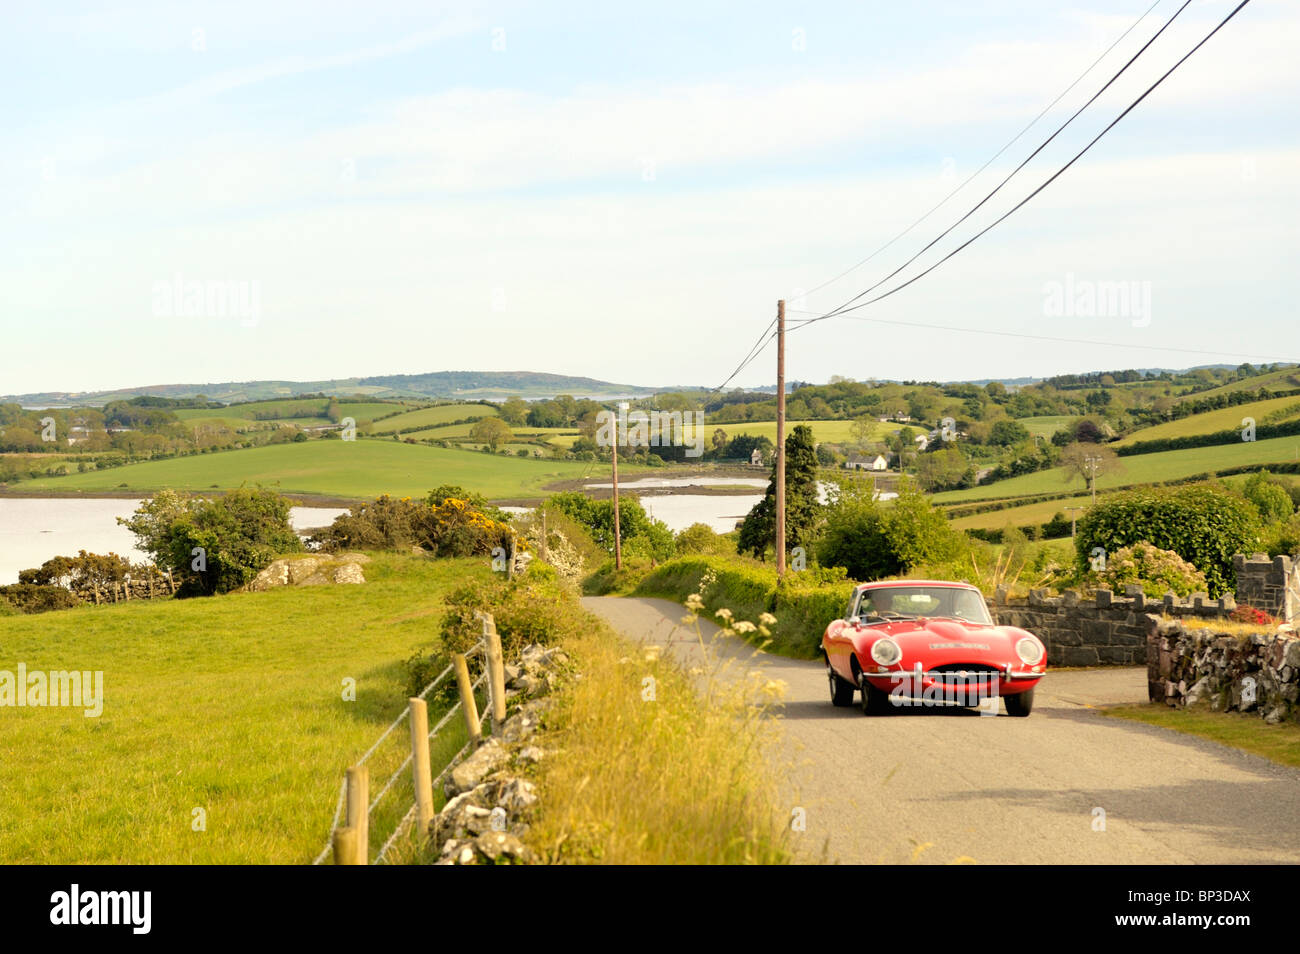 Strangford Lough à Killinchy Co., vers le bas, l'Irlande du Nord. Automobile Jaguar Type E de la conduite sur route de campagne. Banque D'Images